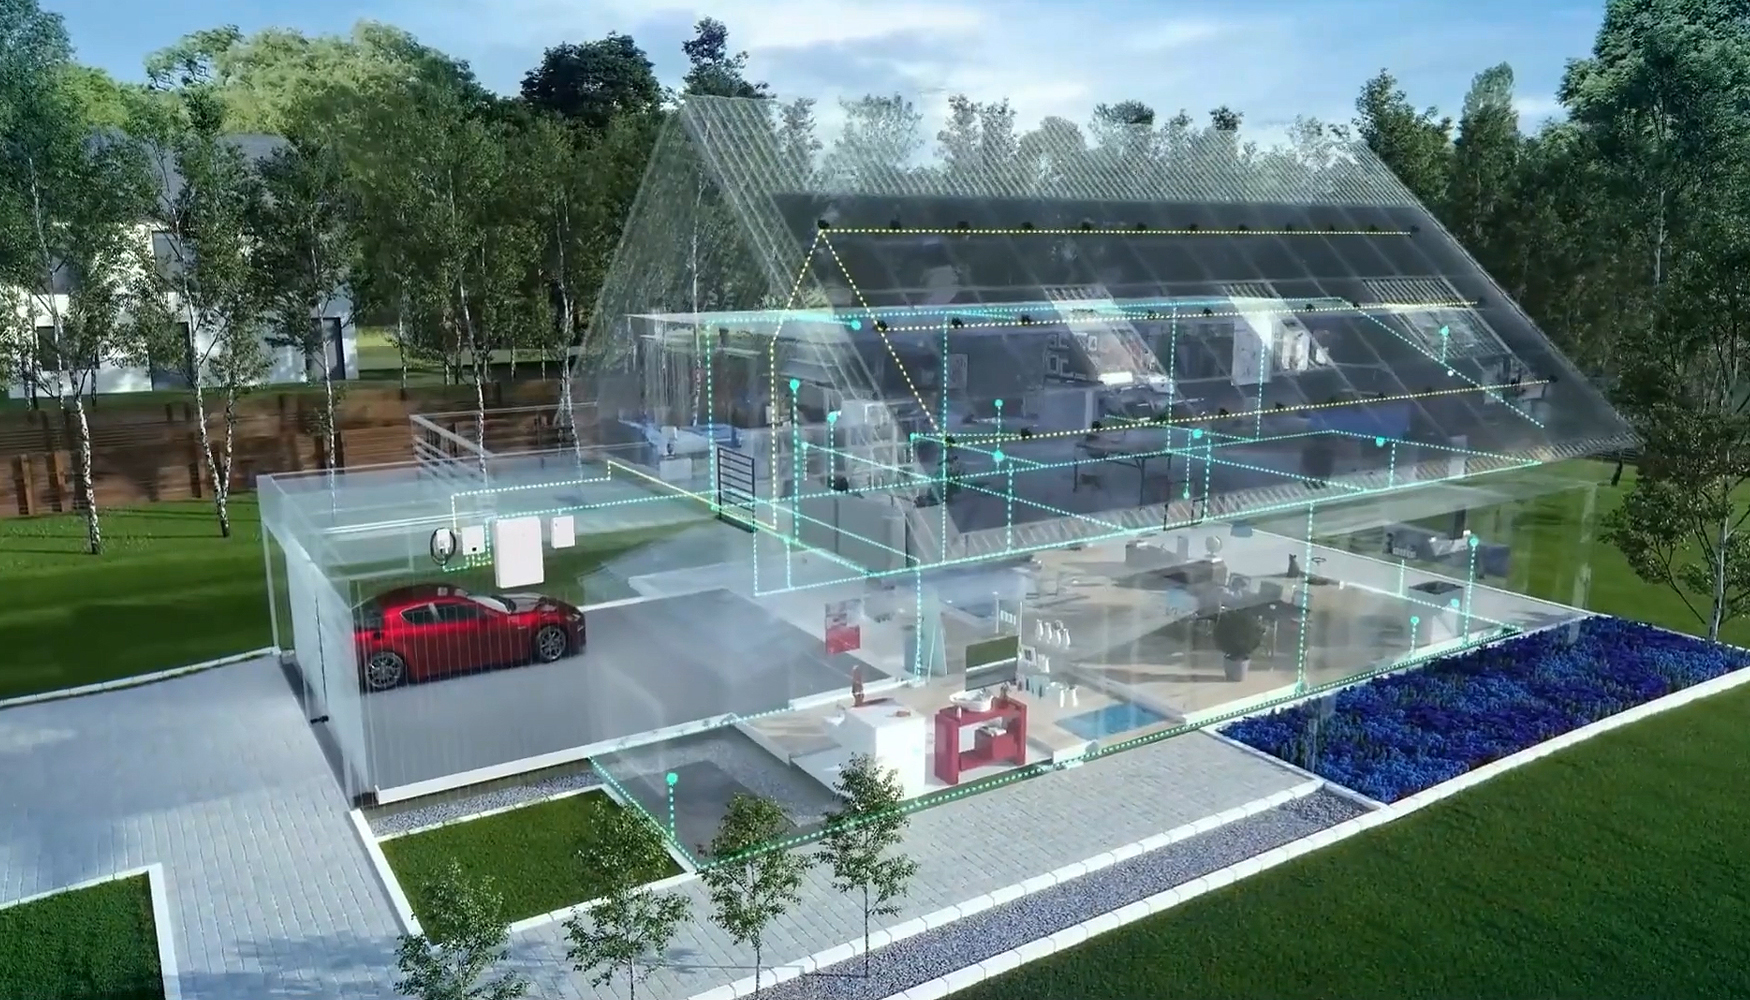 Foto de SolarEdge presentar en Mnich soluciones de nueva generacin para la energa inteligente